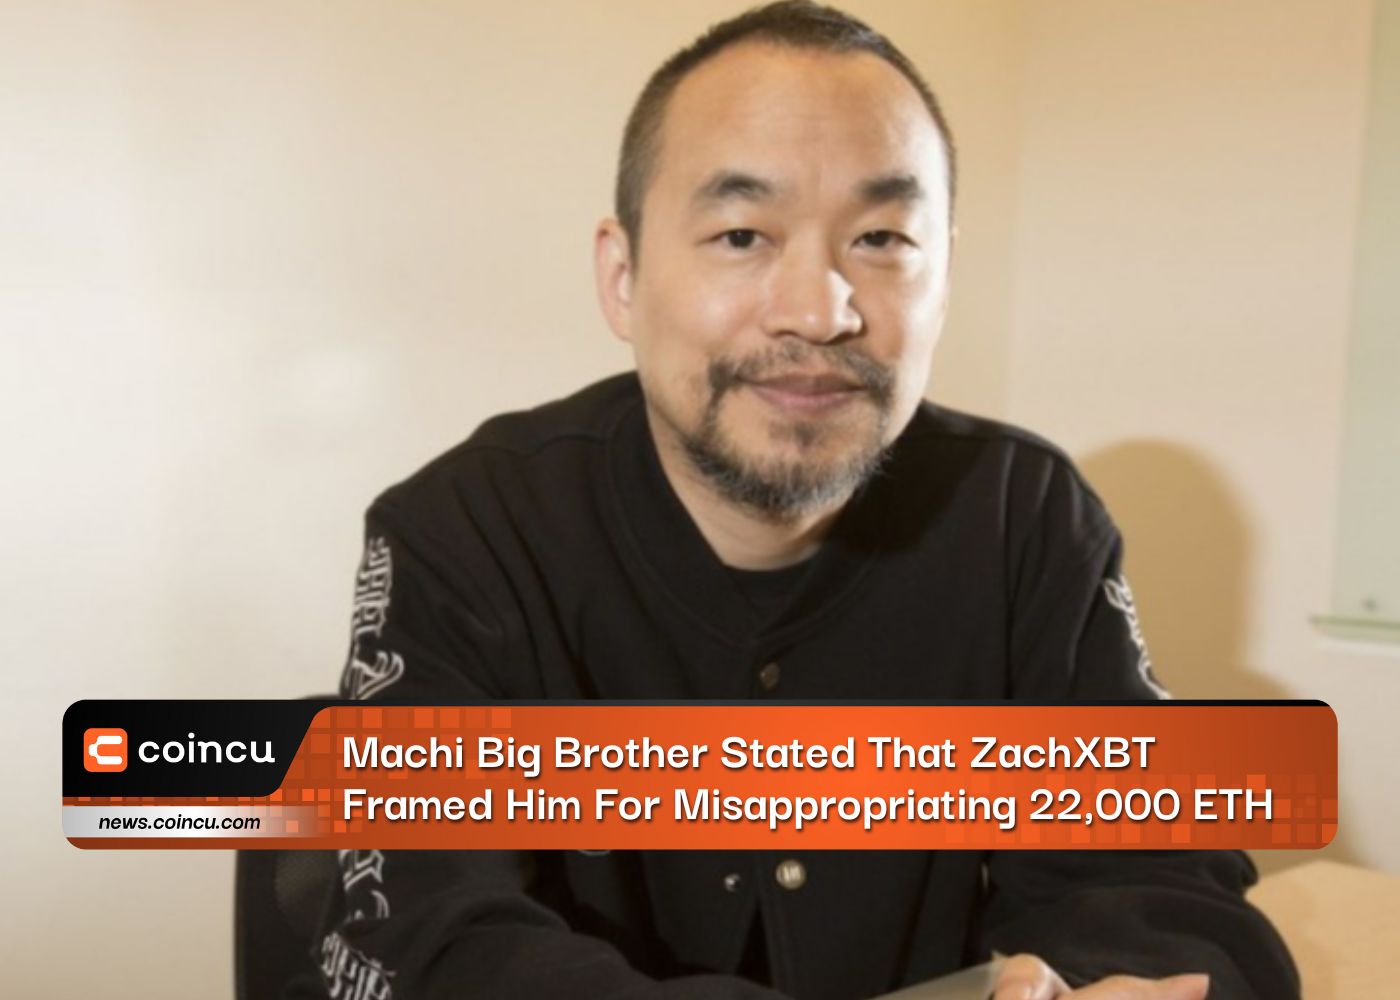 माची बिग ब्रदर ने कहा कि ZachXBT ने उसे 22,000 ETH के दुरुपयोग के लिए फंसाया है